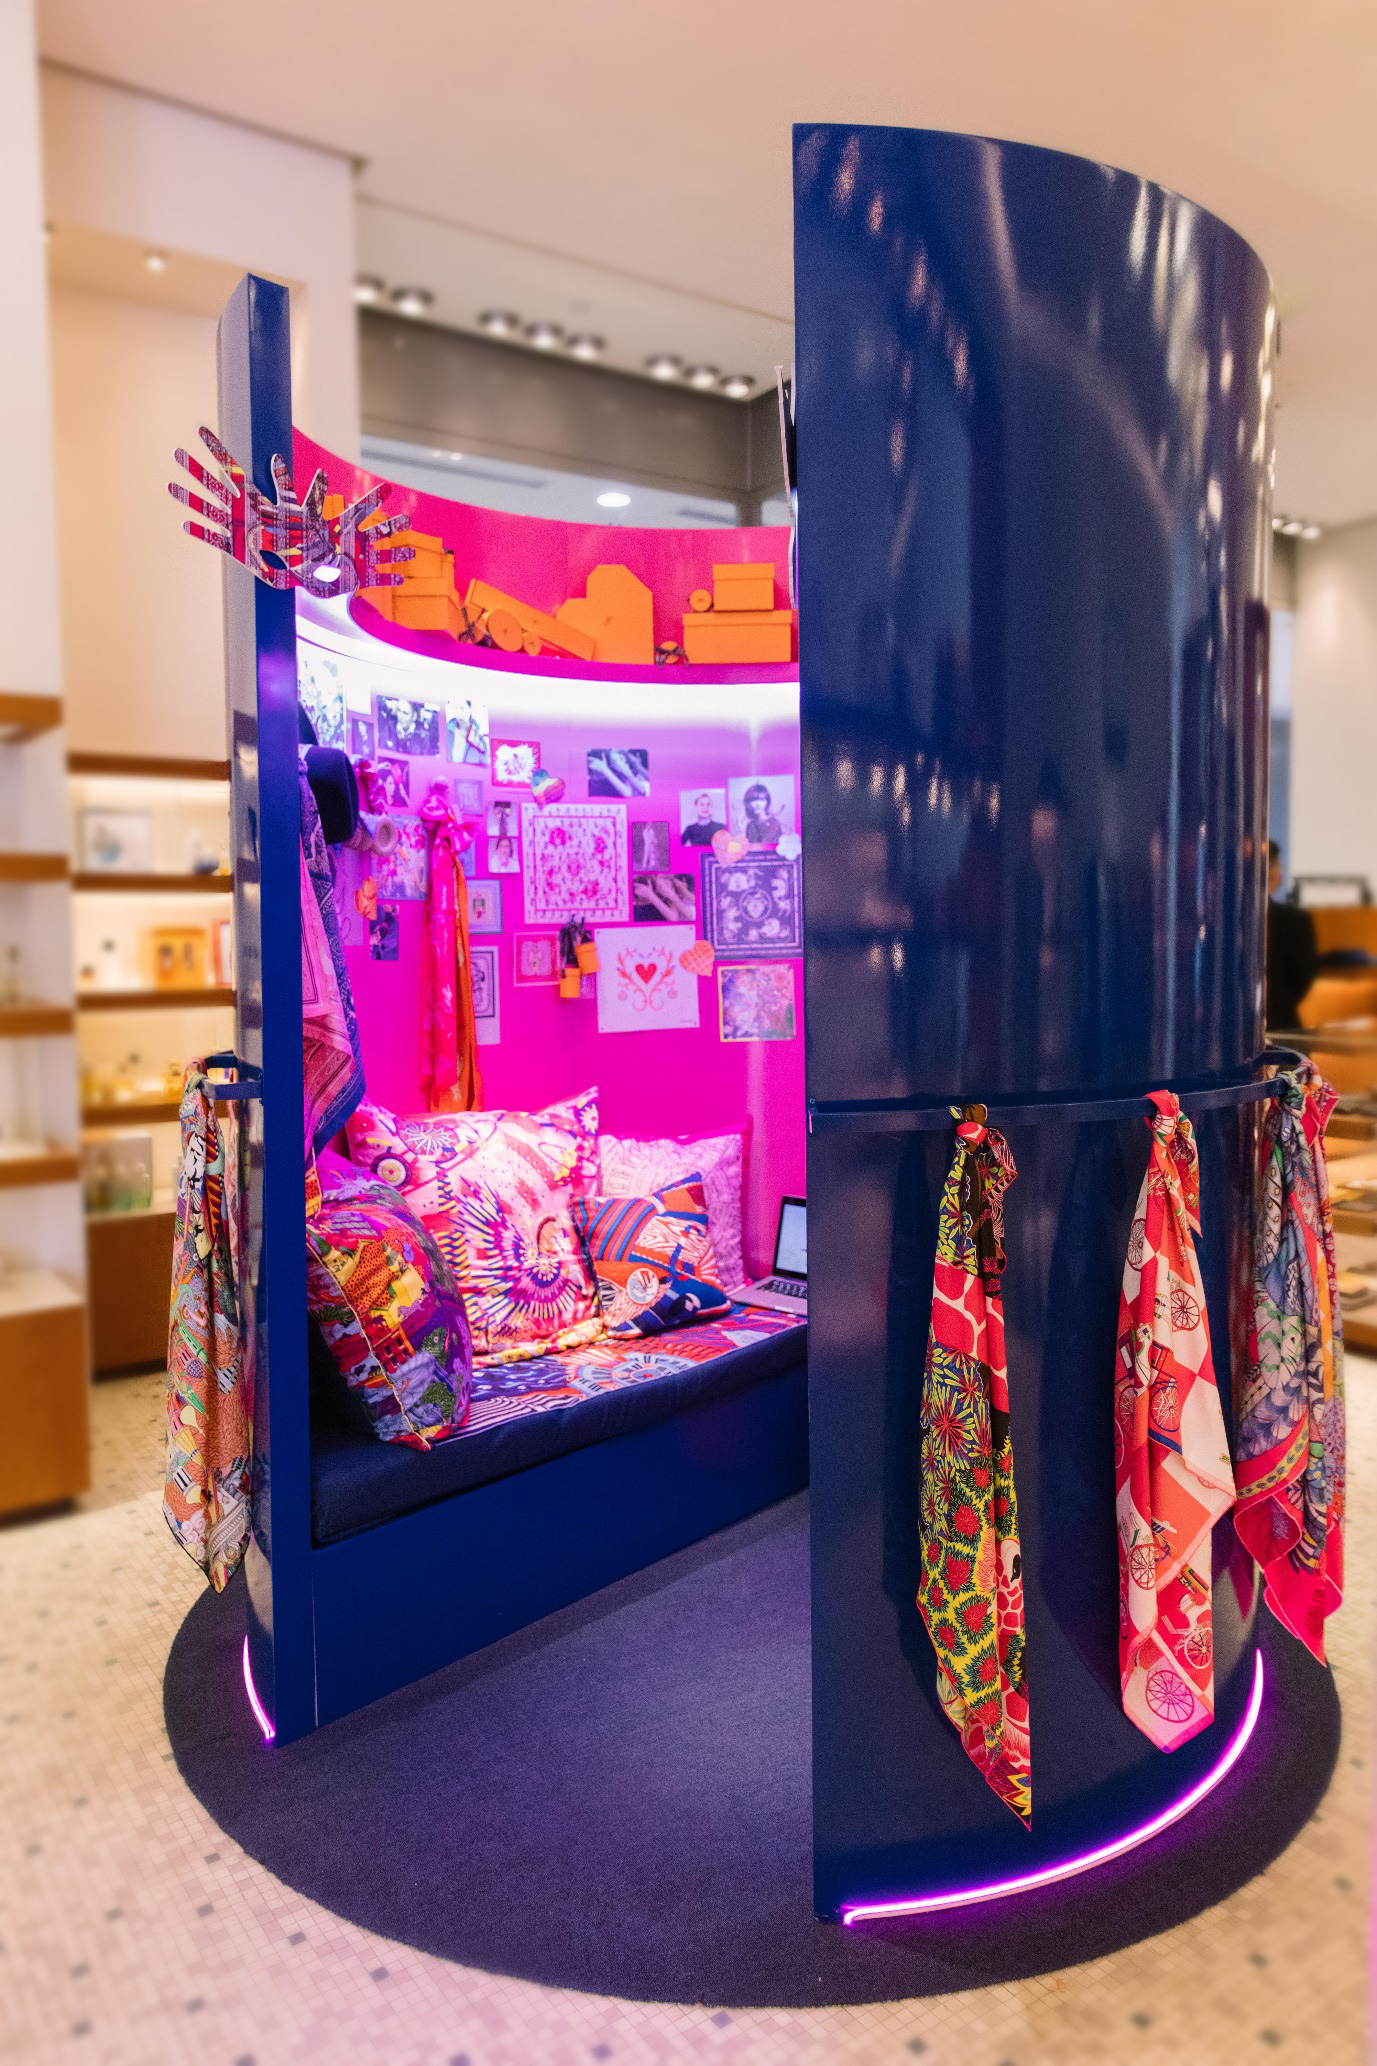 Hermès Pink Room được mở cửa tại các cửa hàng của Hermès tại TP.HCM vào ngày 2/10 vừa qua